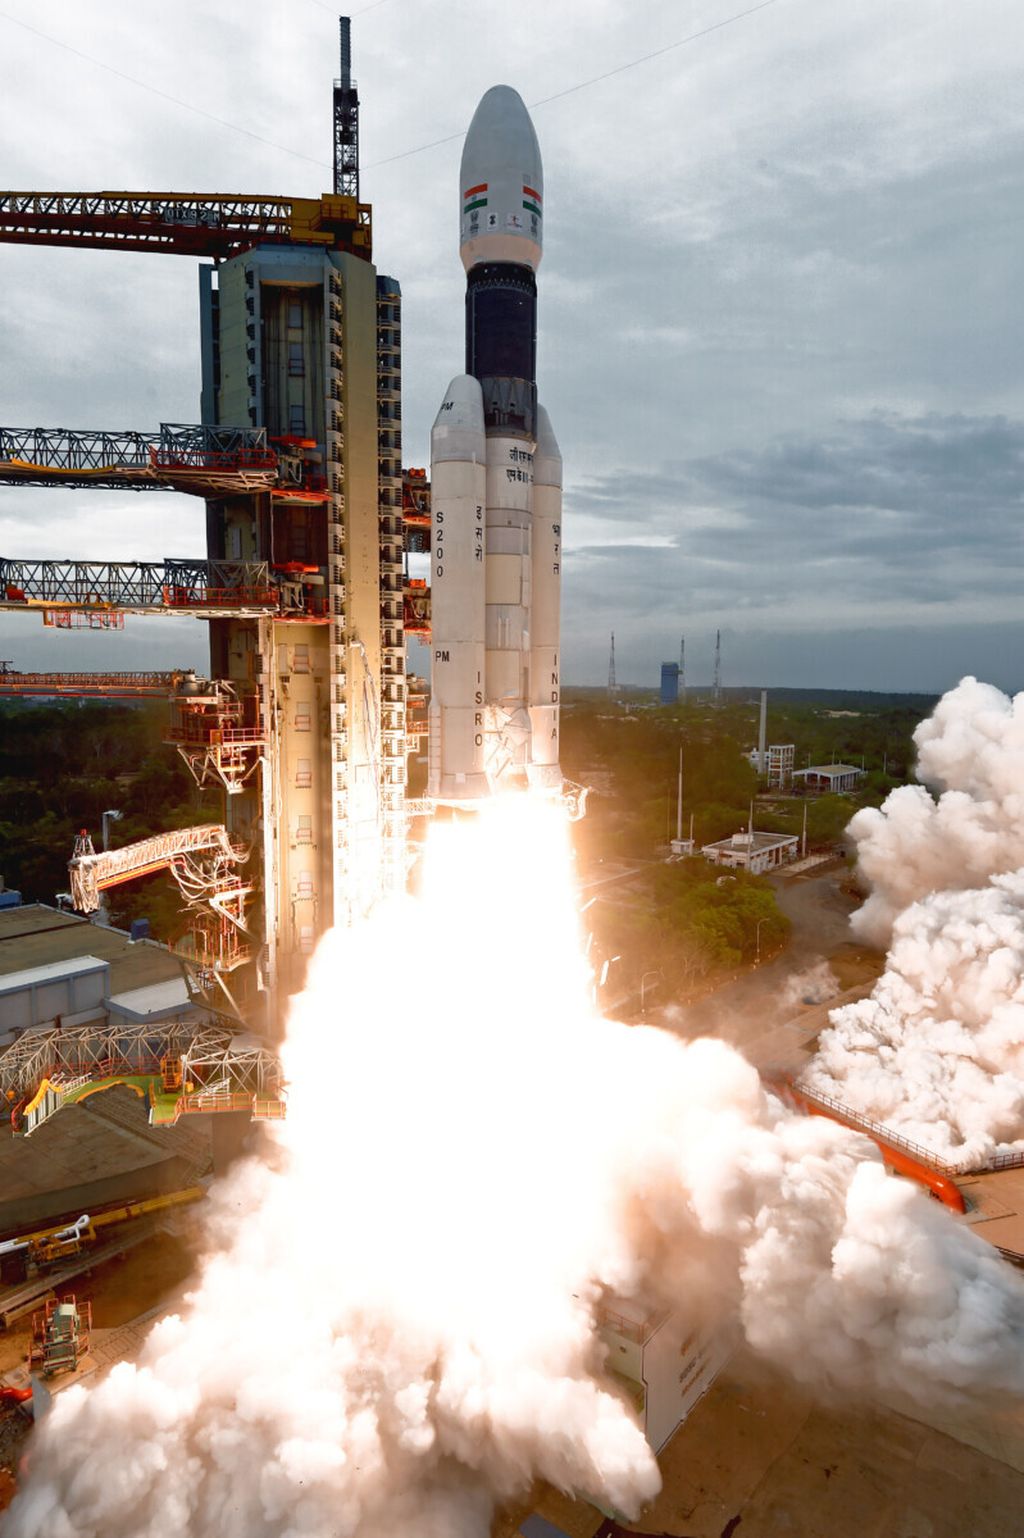 Roket peluncur Geosynchronous Satellite Launch Vehicle Mark III-M1 atau GSLV MkIII-M1 meluncur dari Bandat Antariksa Satish Dhawan, Sriharikota, India, Senin (22/7/2019) pukul 14.43 waktu setempat atau 16.13 WIB. Roket itu membawa wahana pengorbit Chandrayaan-2, wahana pendarat Vikram dan wahana penjejak Pragyan menuju Bulan.